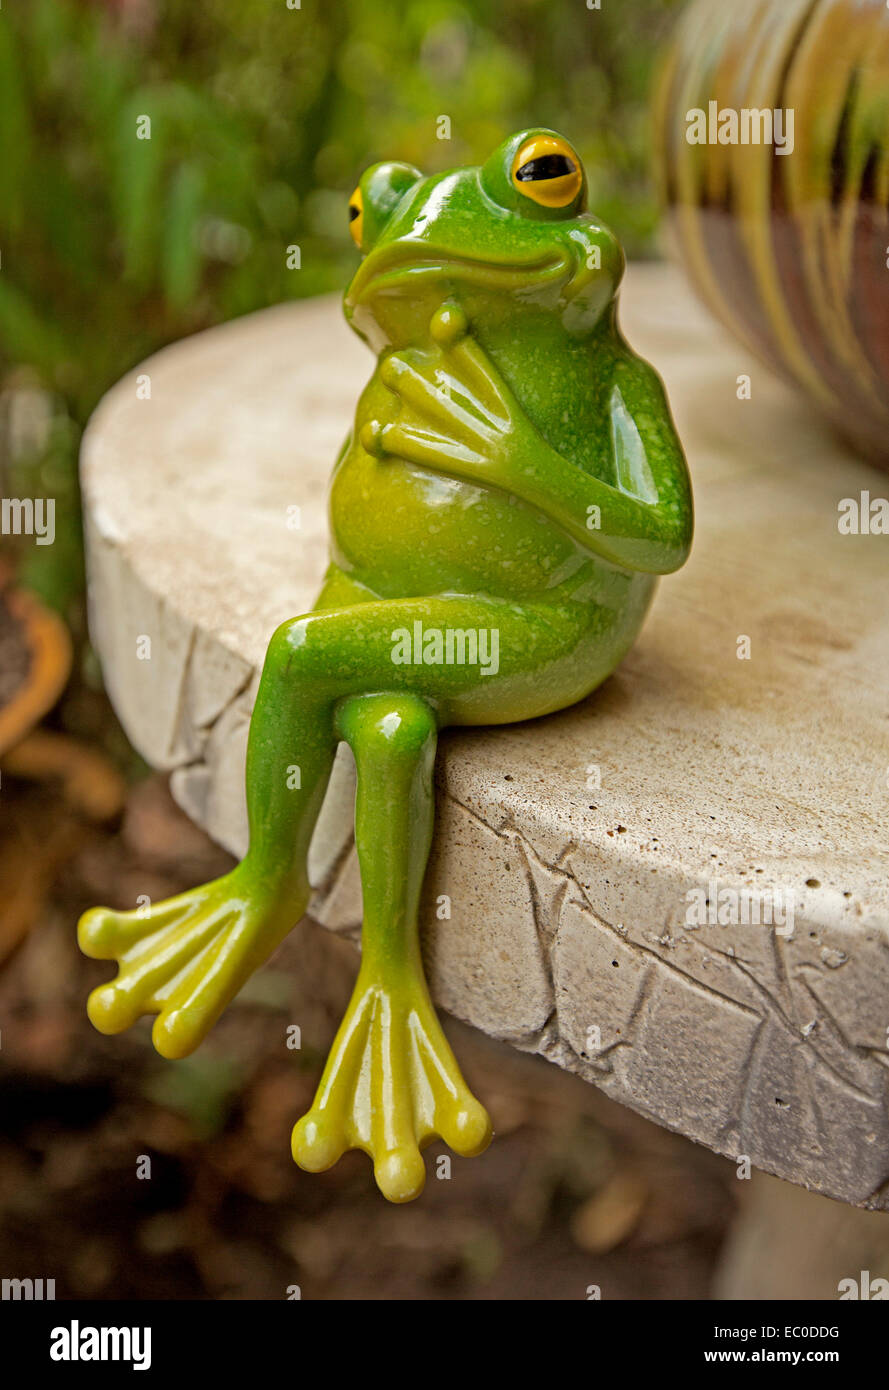 Komischen grünen Frosch Ornament sitzen mit gekreuzten Beinen auf der Tischkante mit Ausdruck & Pose als obwohl tief in Gedanken. Stockfoto